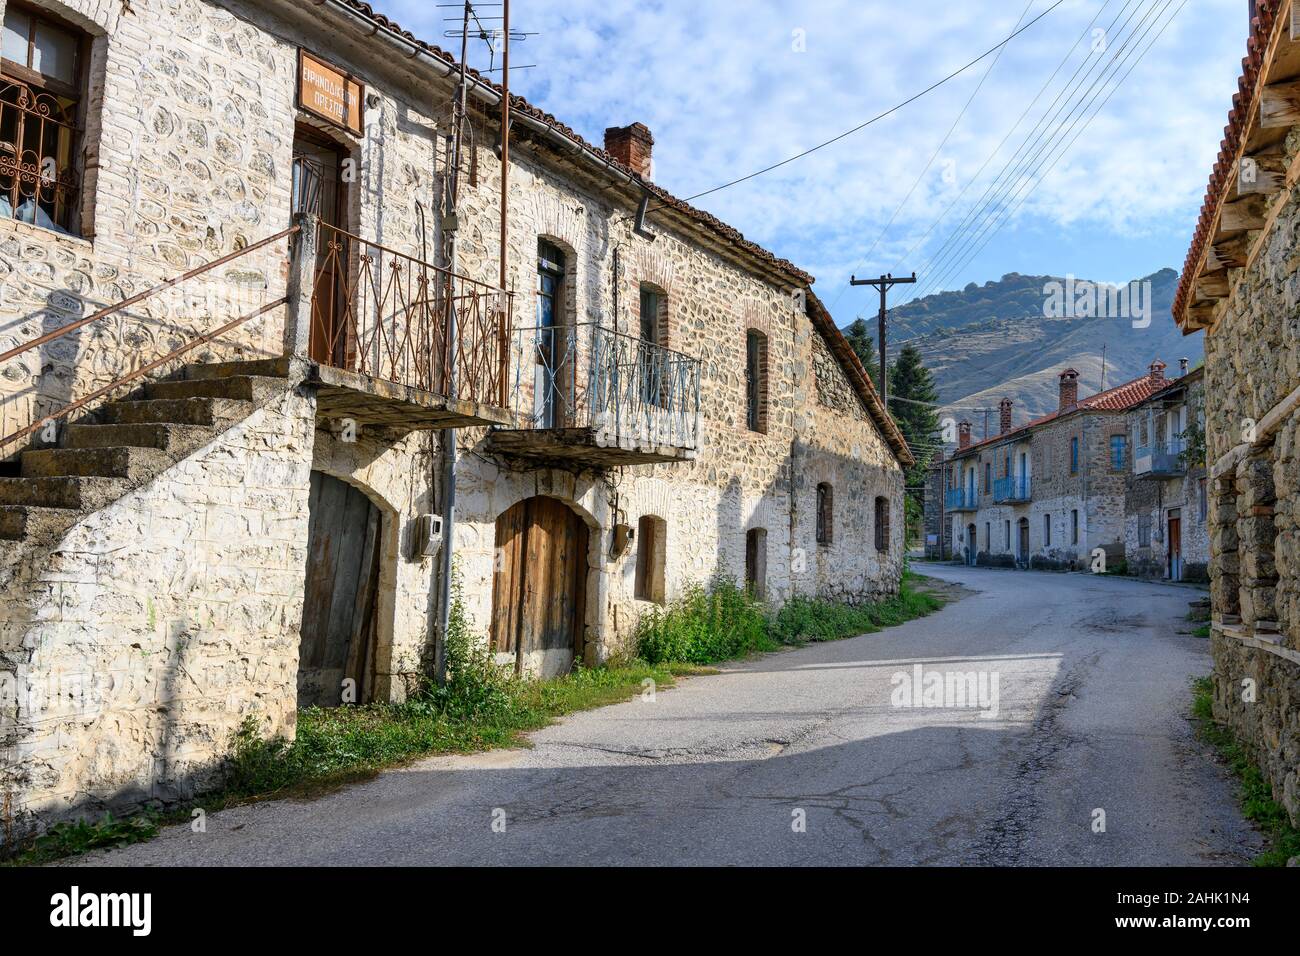 Die alten Häuser an der Hauptstraße, in dem kleinen Dorf Agios Germanos nahe Lake Prespa in der Gemeinde Prespes, Mazedonien, im Norden Griechenlands. Stockfoto